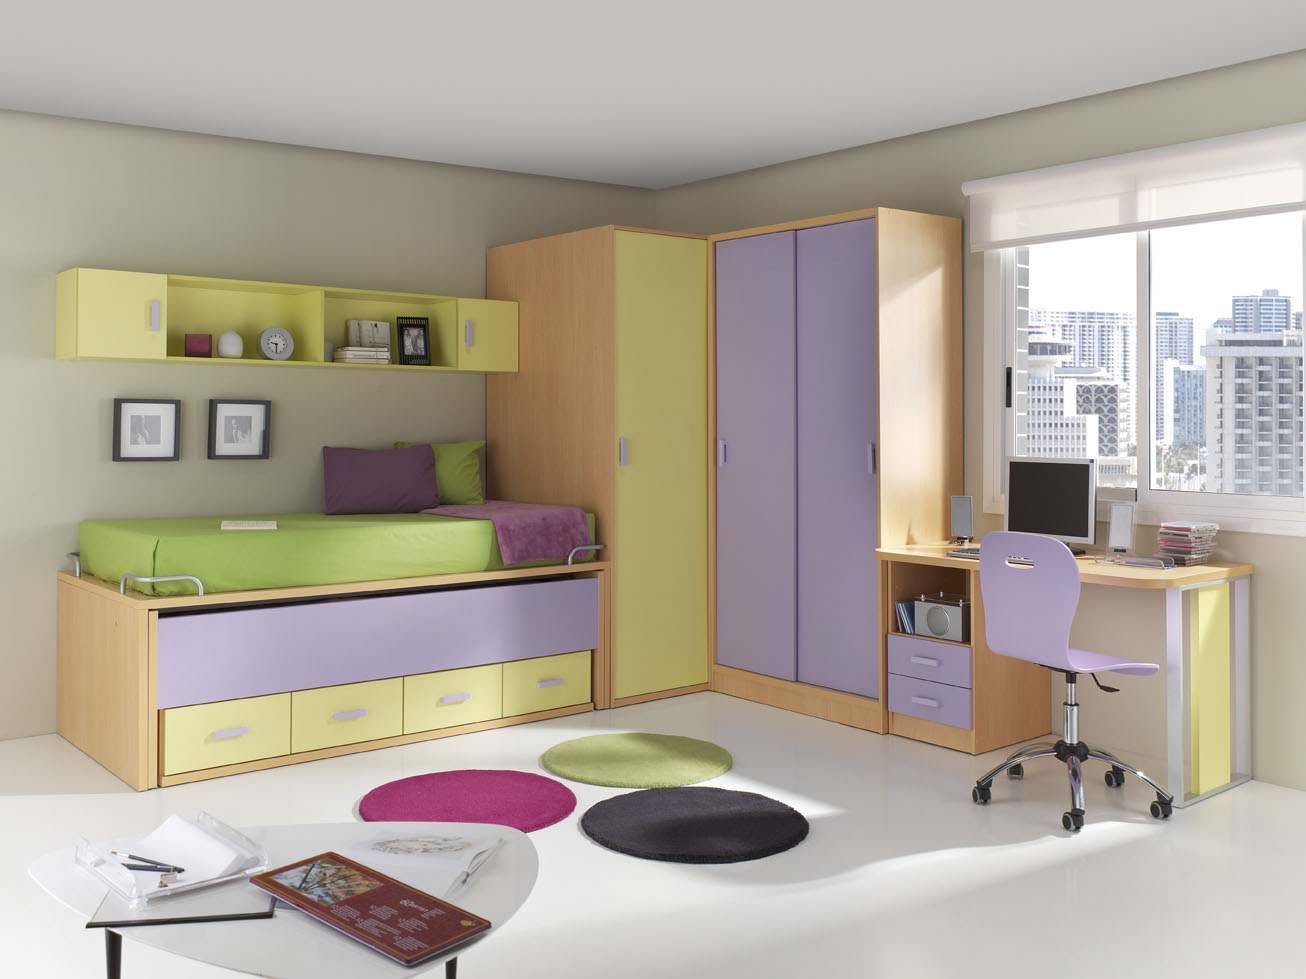 más nombre de la marca Cielo Dormitorios juveniles: funcionales y bonitos - Muebles Orts Blog